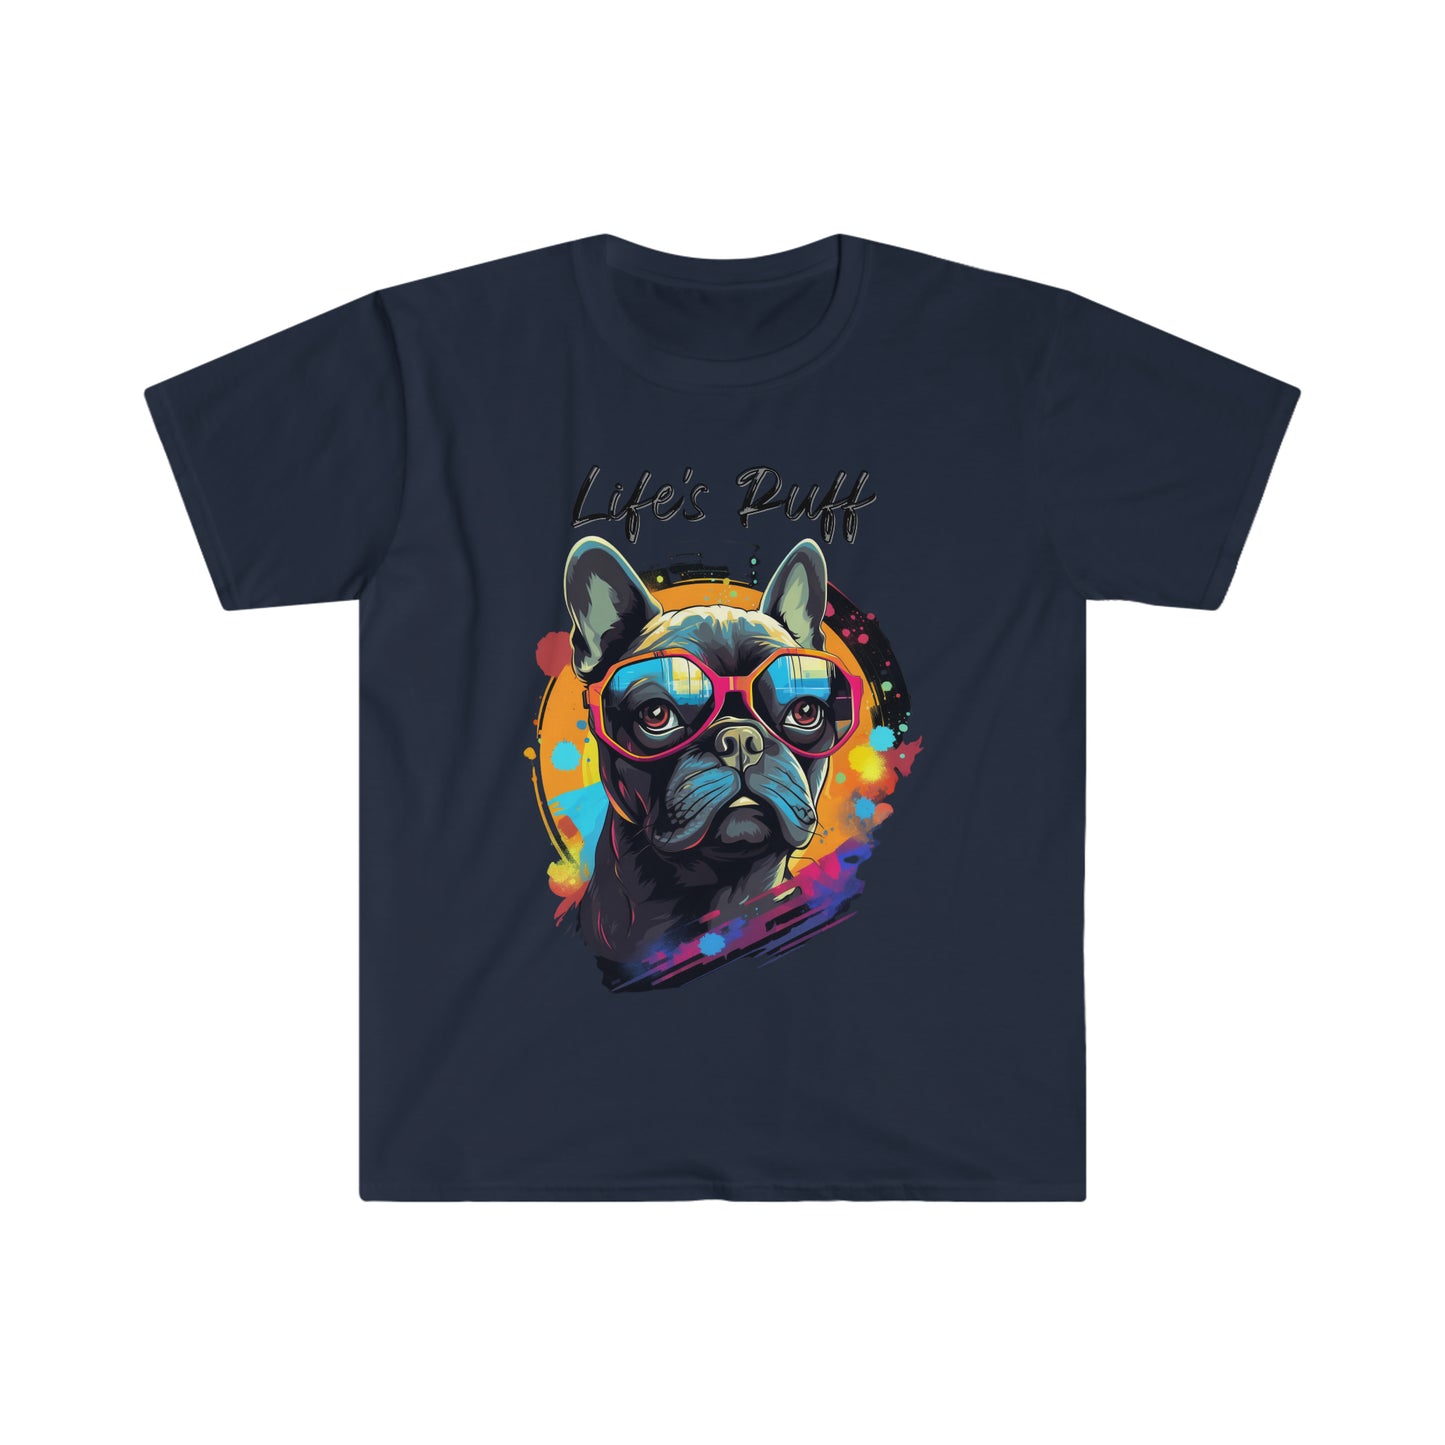 "Life's Ruff" French Bulldog T-Shirt